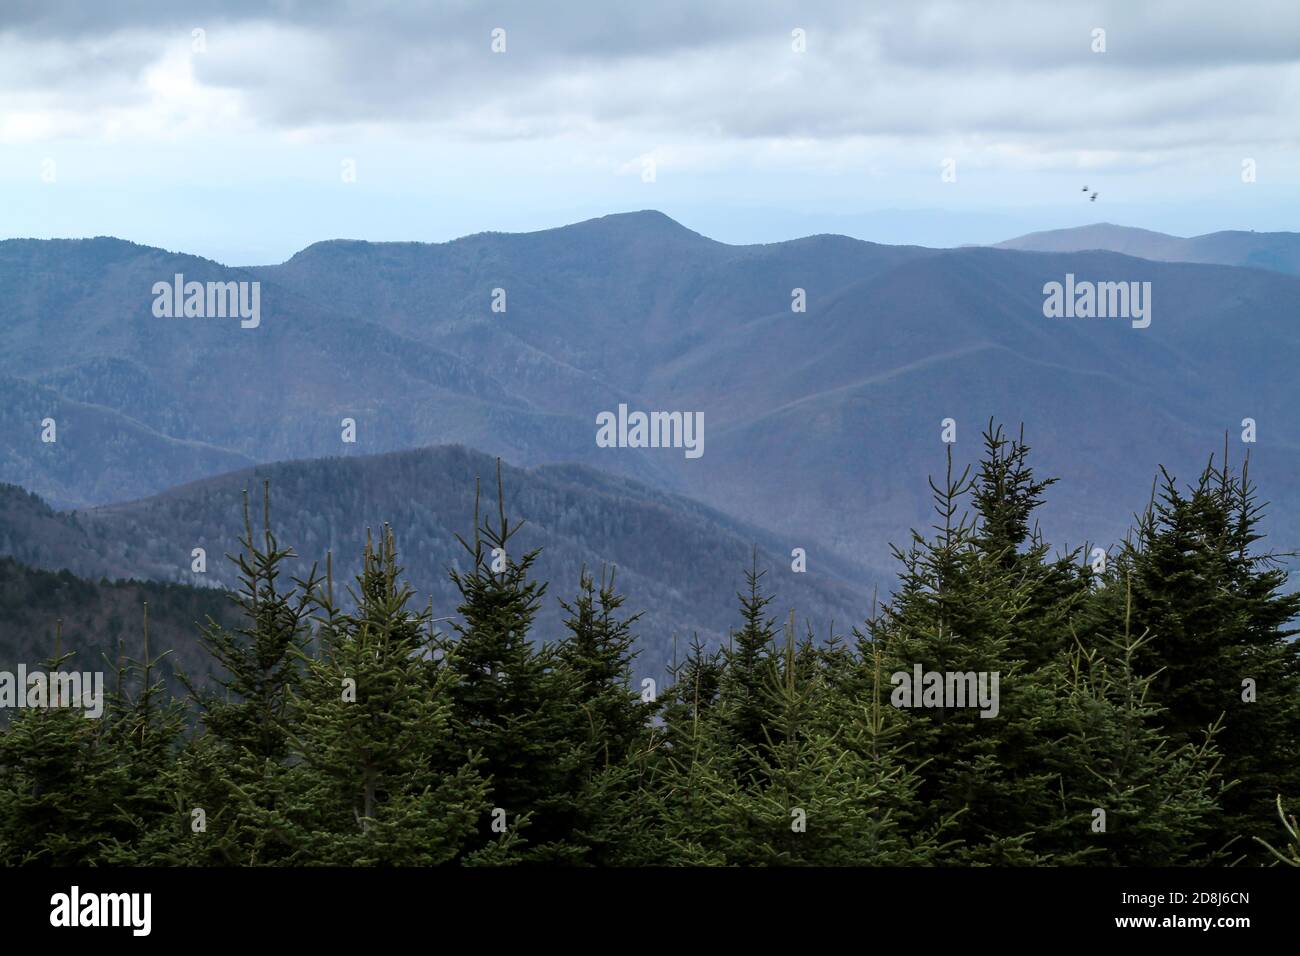 Una vista delle Blue Ridge Mountains del North Carolina dalla cima del Monte Mitchell, la vetta più alta ad est del fiume Mississippi, alta 6,684 metri. Foto Stock